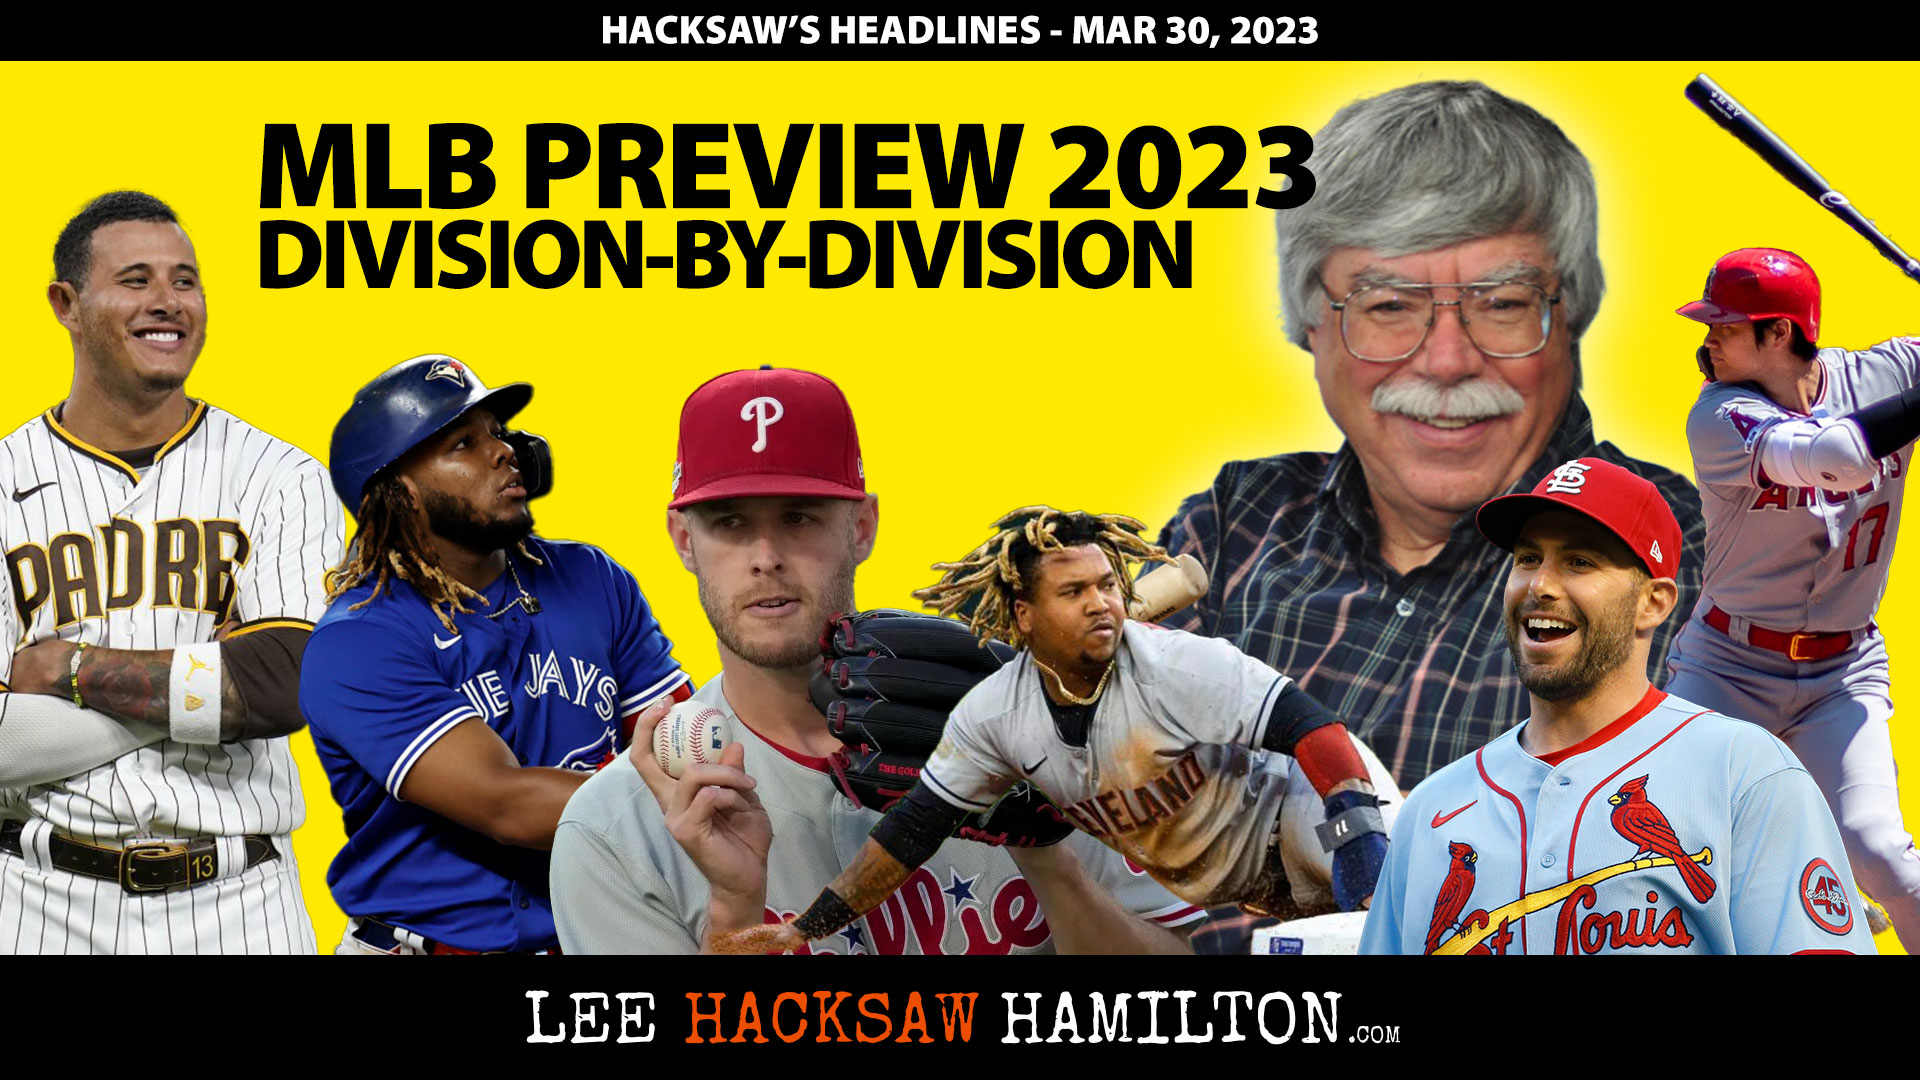 Lee Hacksaw Hamilton discusses the Major League Baseball season, MLB 2023